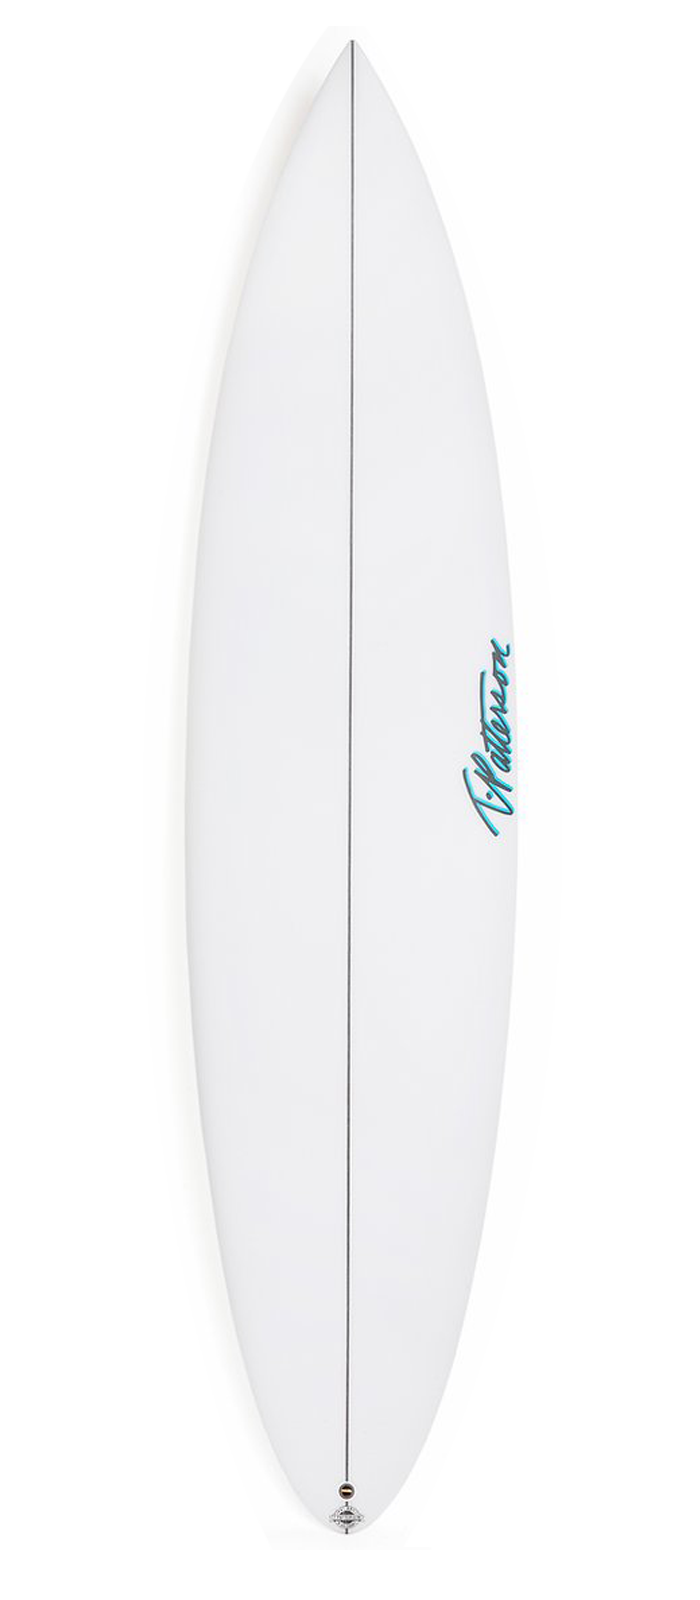 STEP UP surfboard model deck